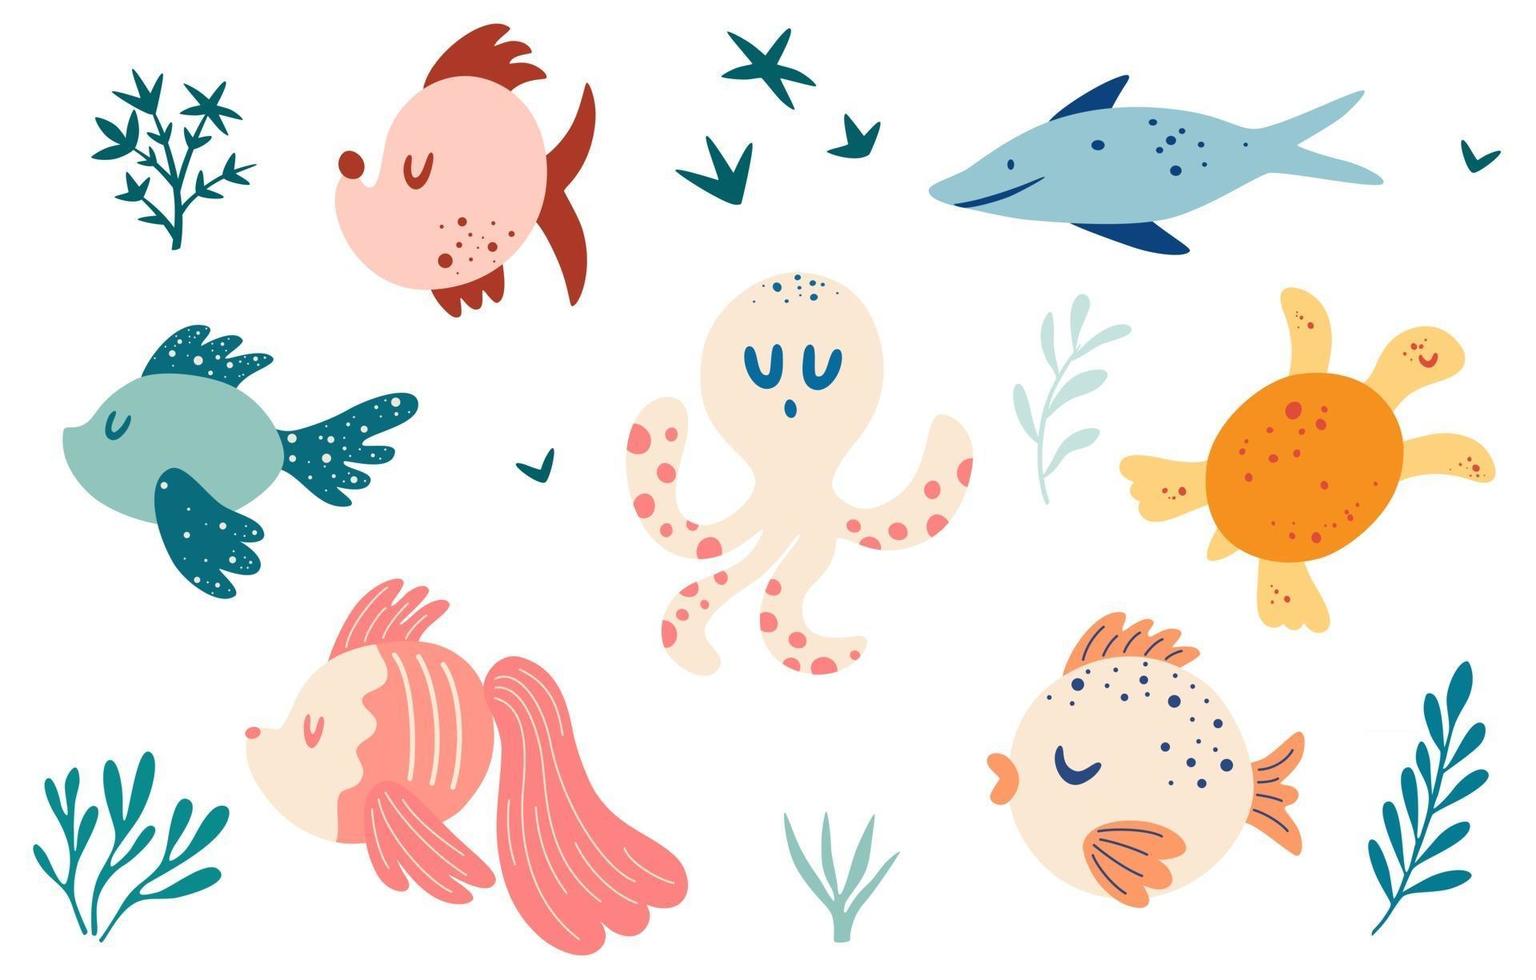 conjunto com peixes vários tipos de peixes tartaruga polvo animais marinhos e plantas aquáticas conceito marítimo coleção de criaturas subaquáticas criaturas marinhas ilustração em vetor personagem de desenho animado engraçado